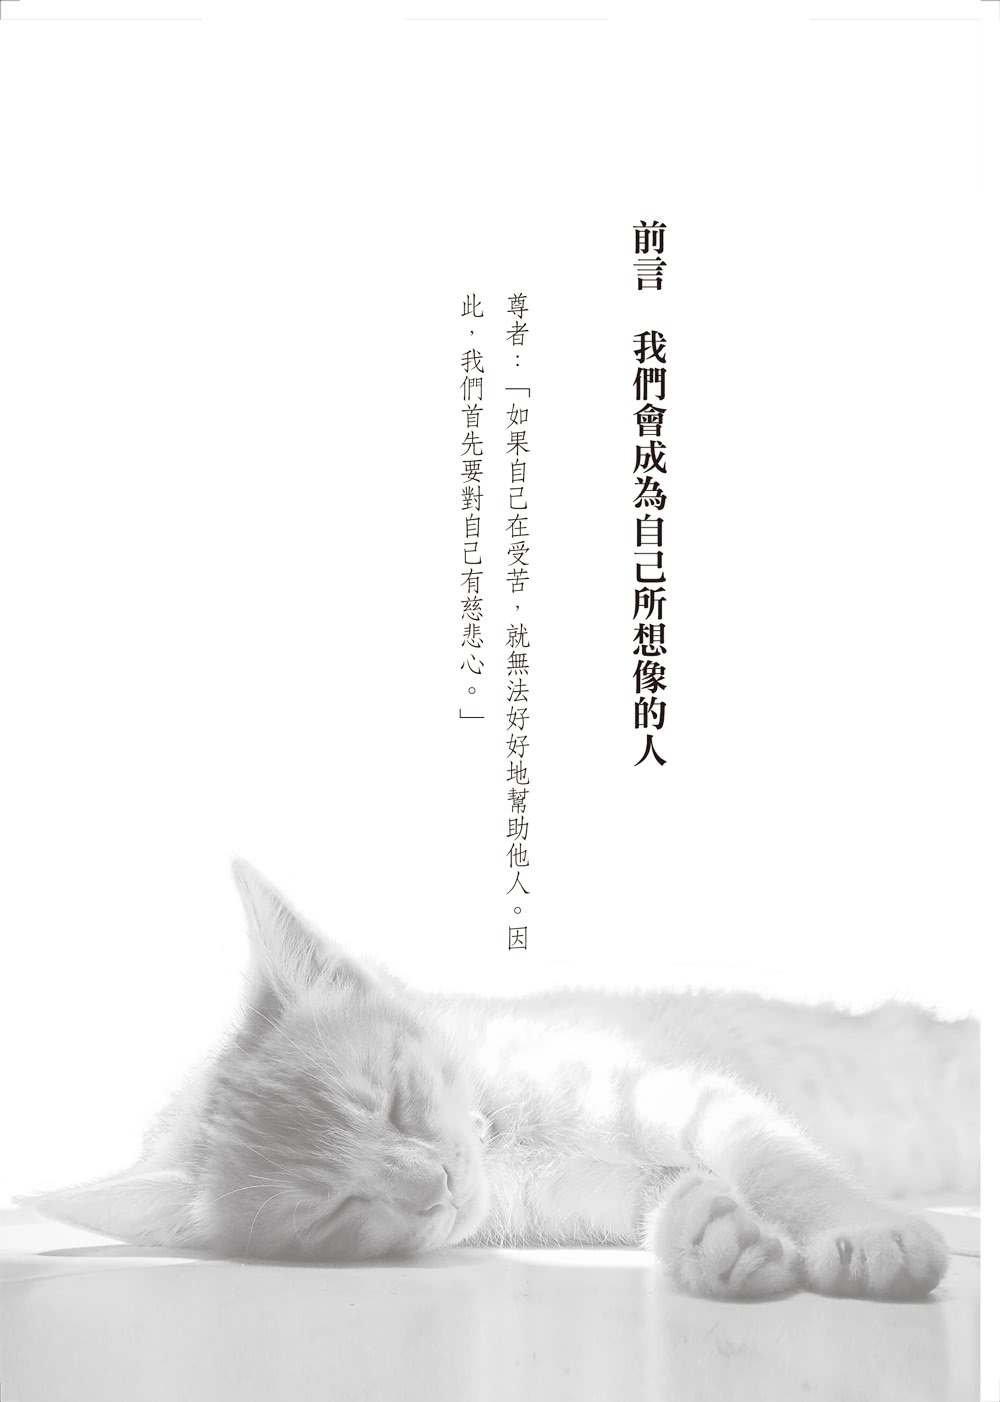 達賴喇嘛的貓5：喚醒內在小貓，點燃生命熱情，找回最純粹的幸福